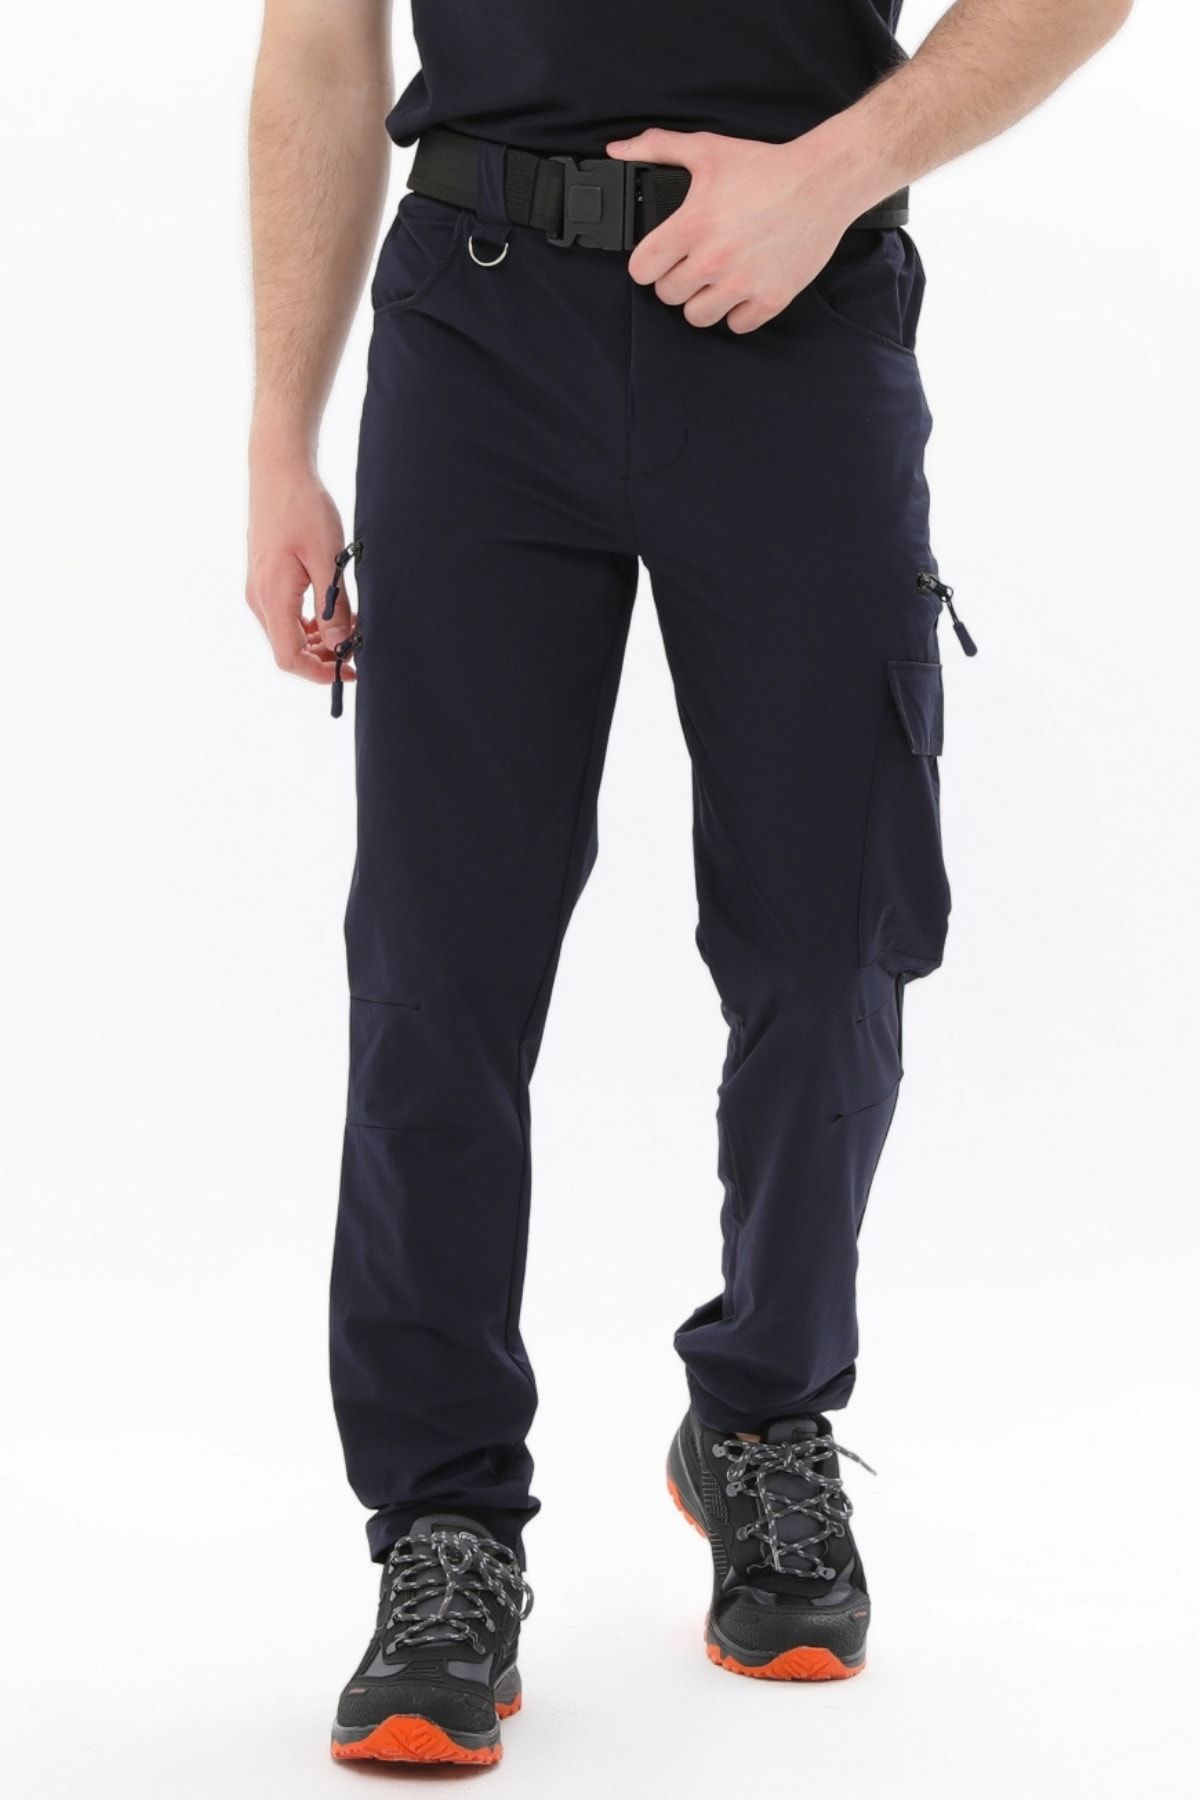 Ghassy Co Erkek Tactical Hızlı Kuruma Kargo Cepli Pantolon Hafif Yürüyüş 7 Cepli Outdoor Pantolonu